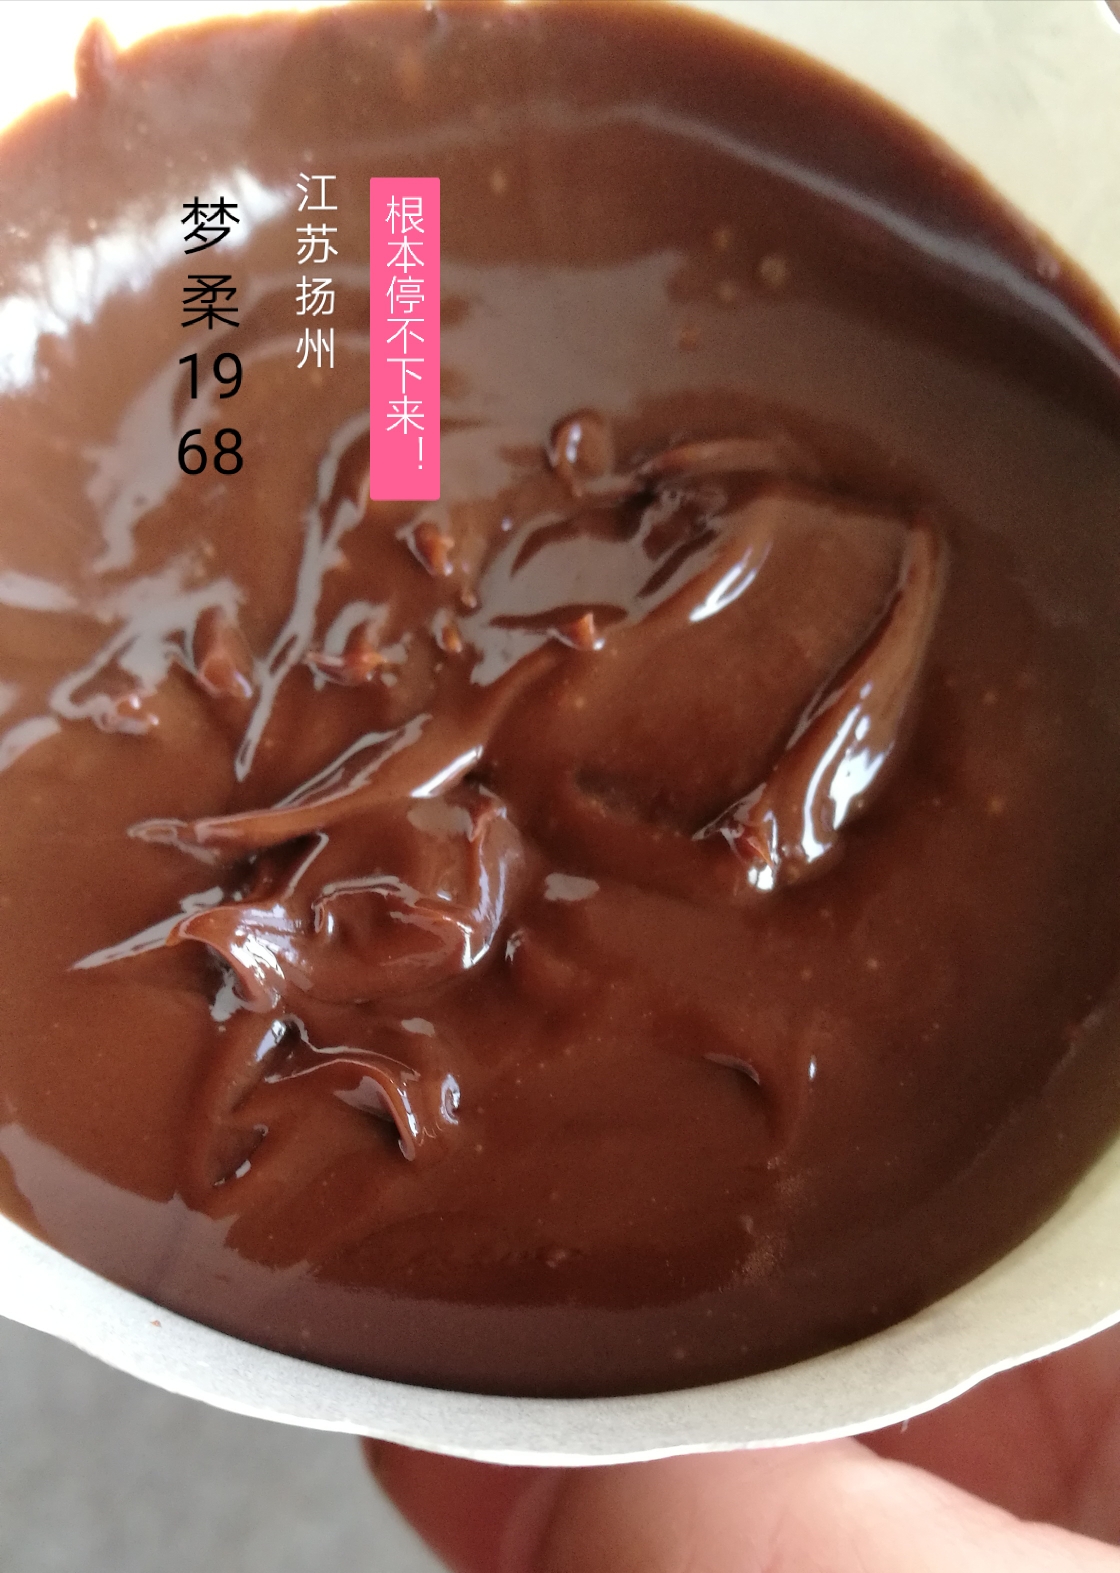 简易版的自制巧克力酱的做法